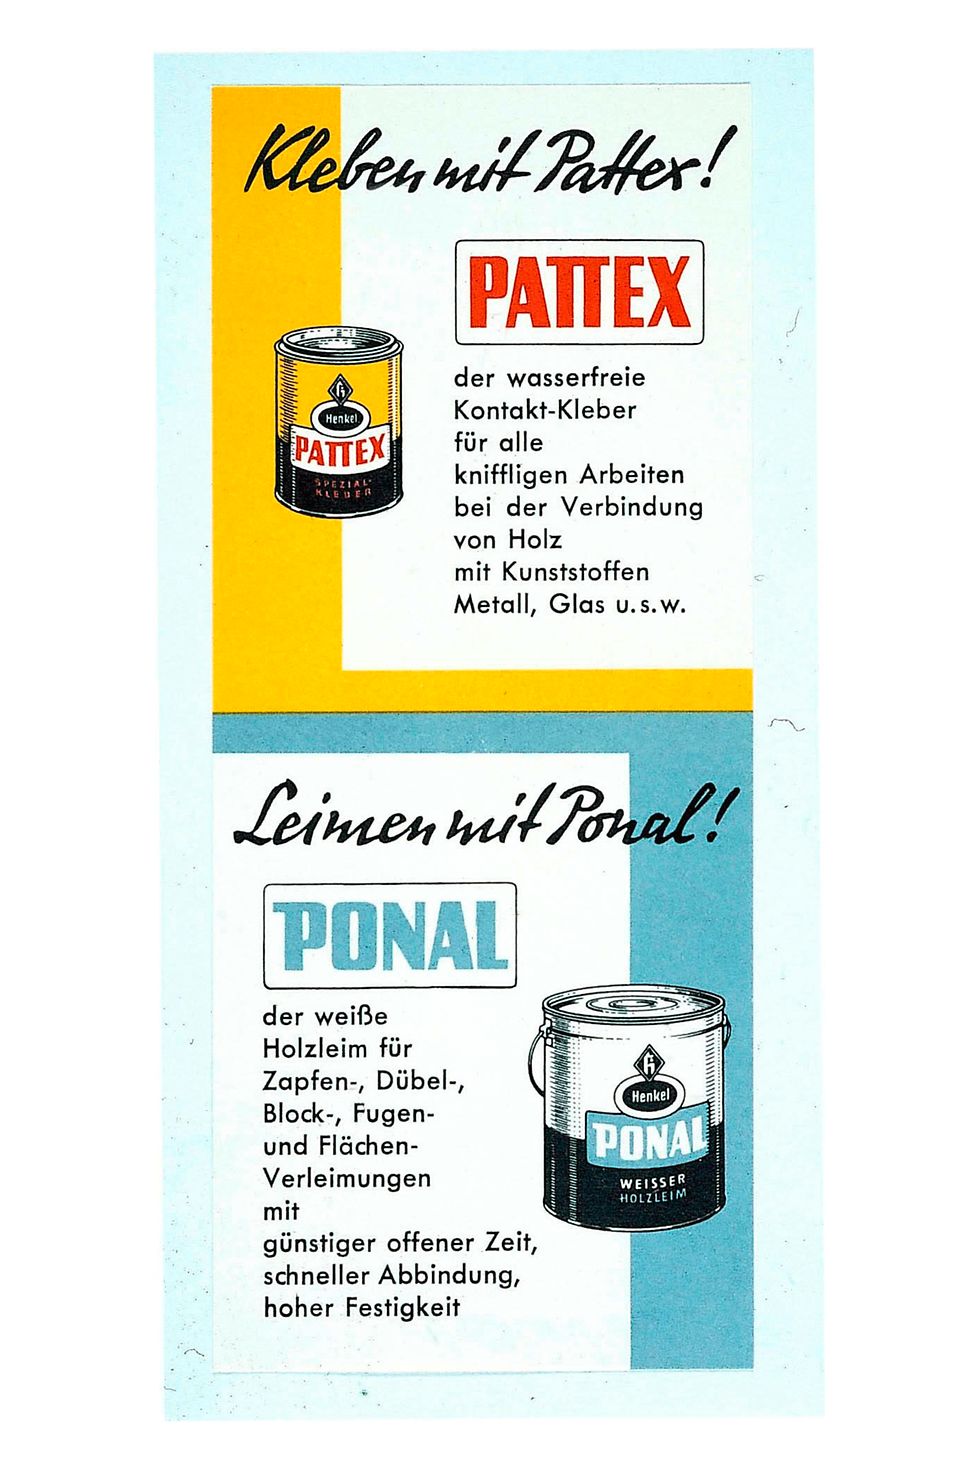 Historische Werbung für Pattex und Ponal